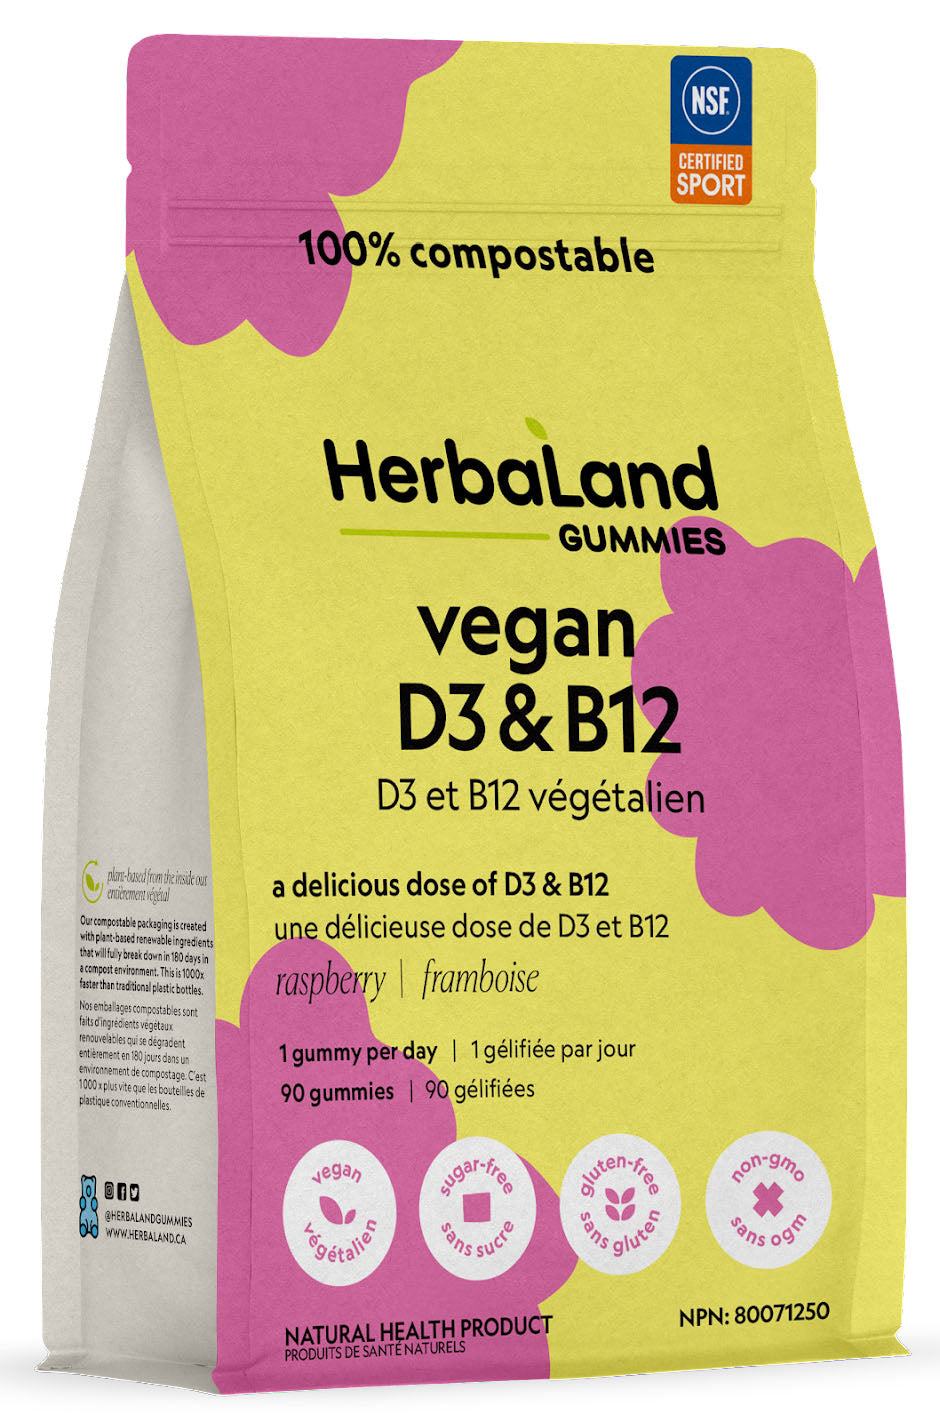 HERBALAND Vegan D3 & B12 (Raspberry - 90 gummies)